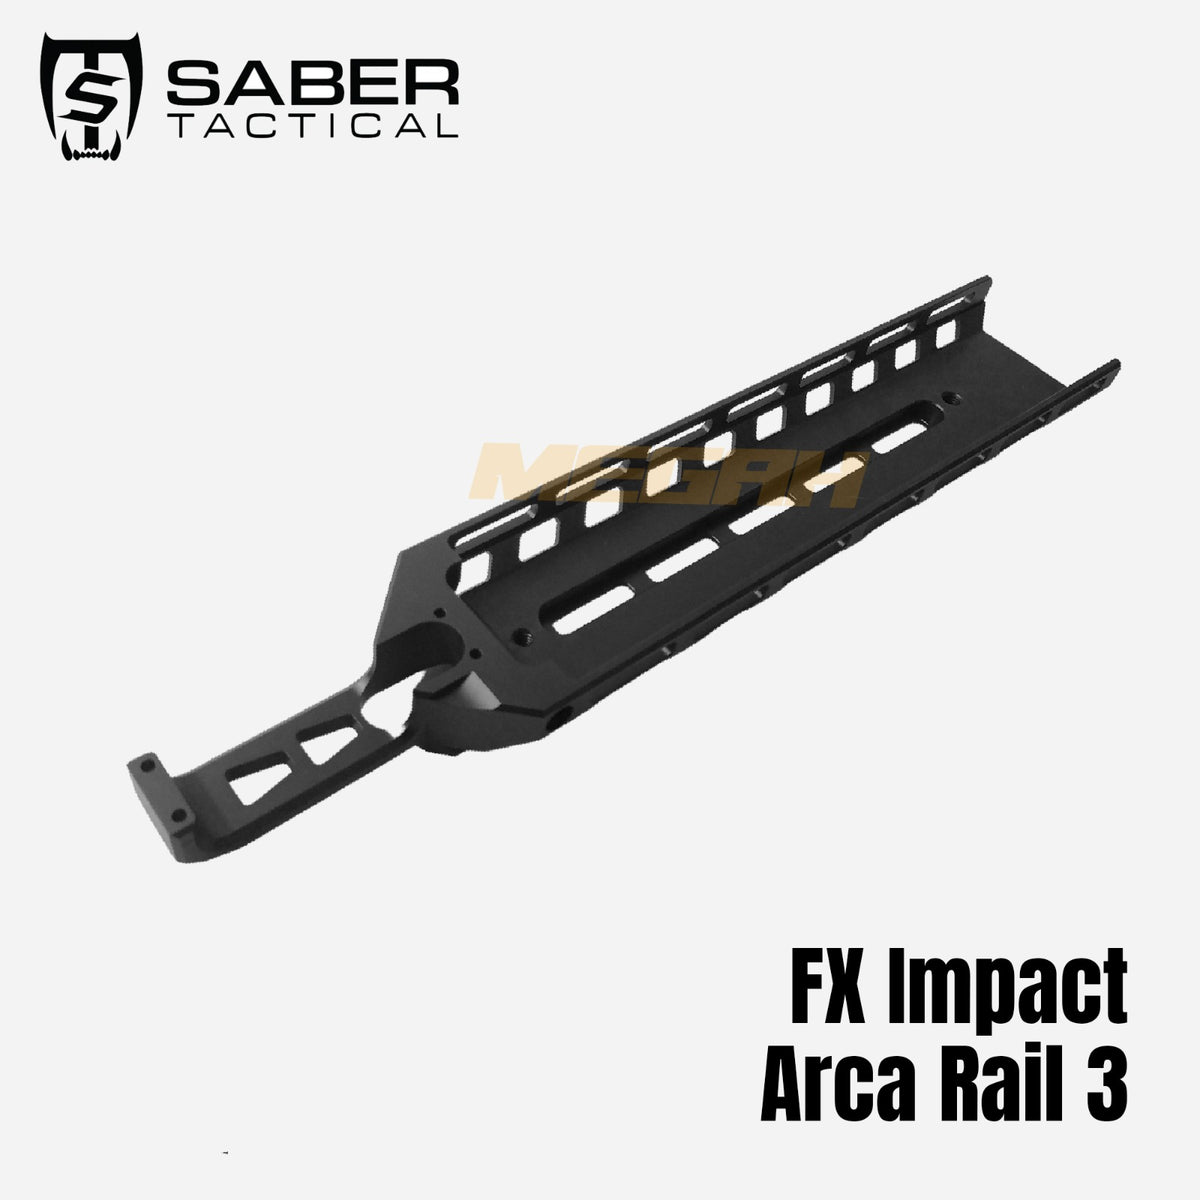 SABER TACTICAL ARCA RAIL 3